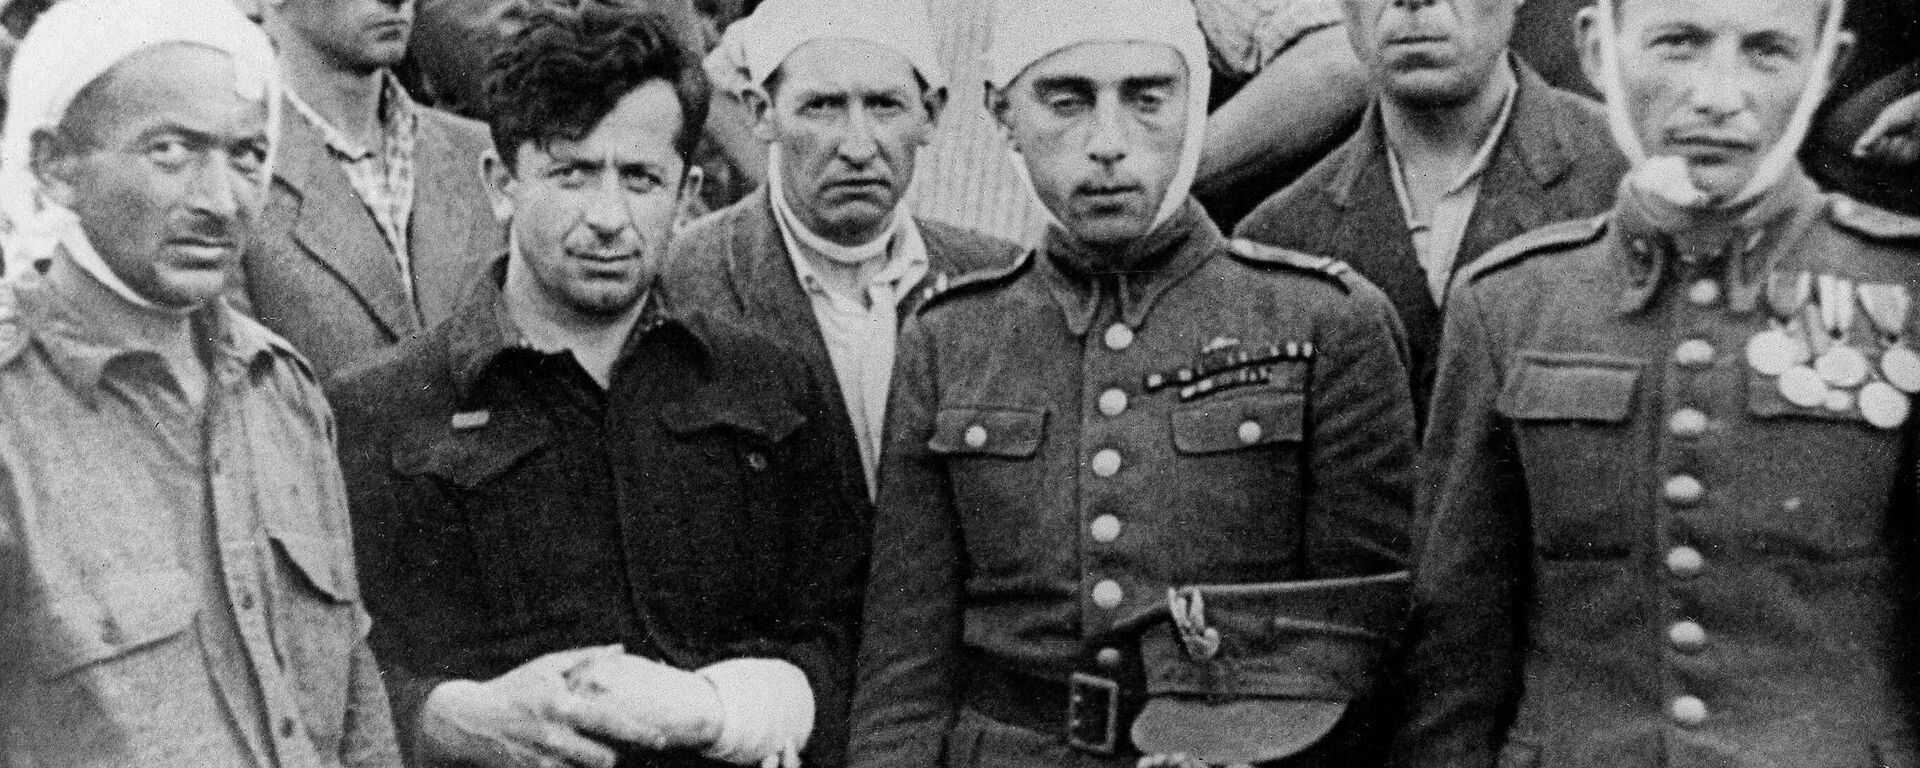 Keļcas slaktiņa laikā ievainotie ebreji. - Sputnik Latvija, 1920, 04.07.2021